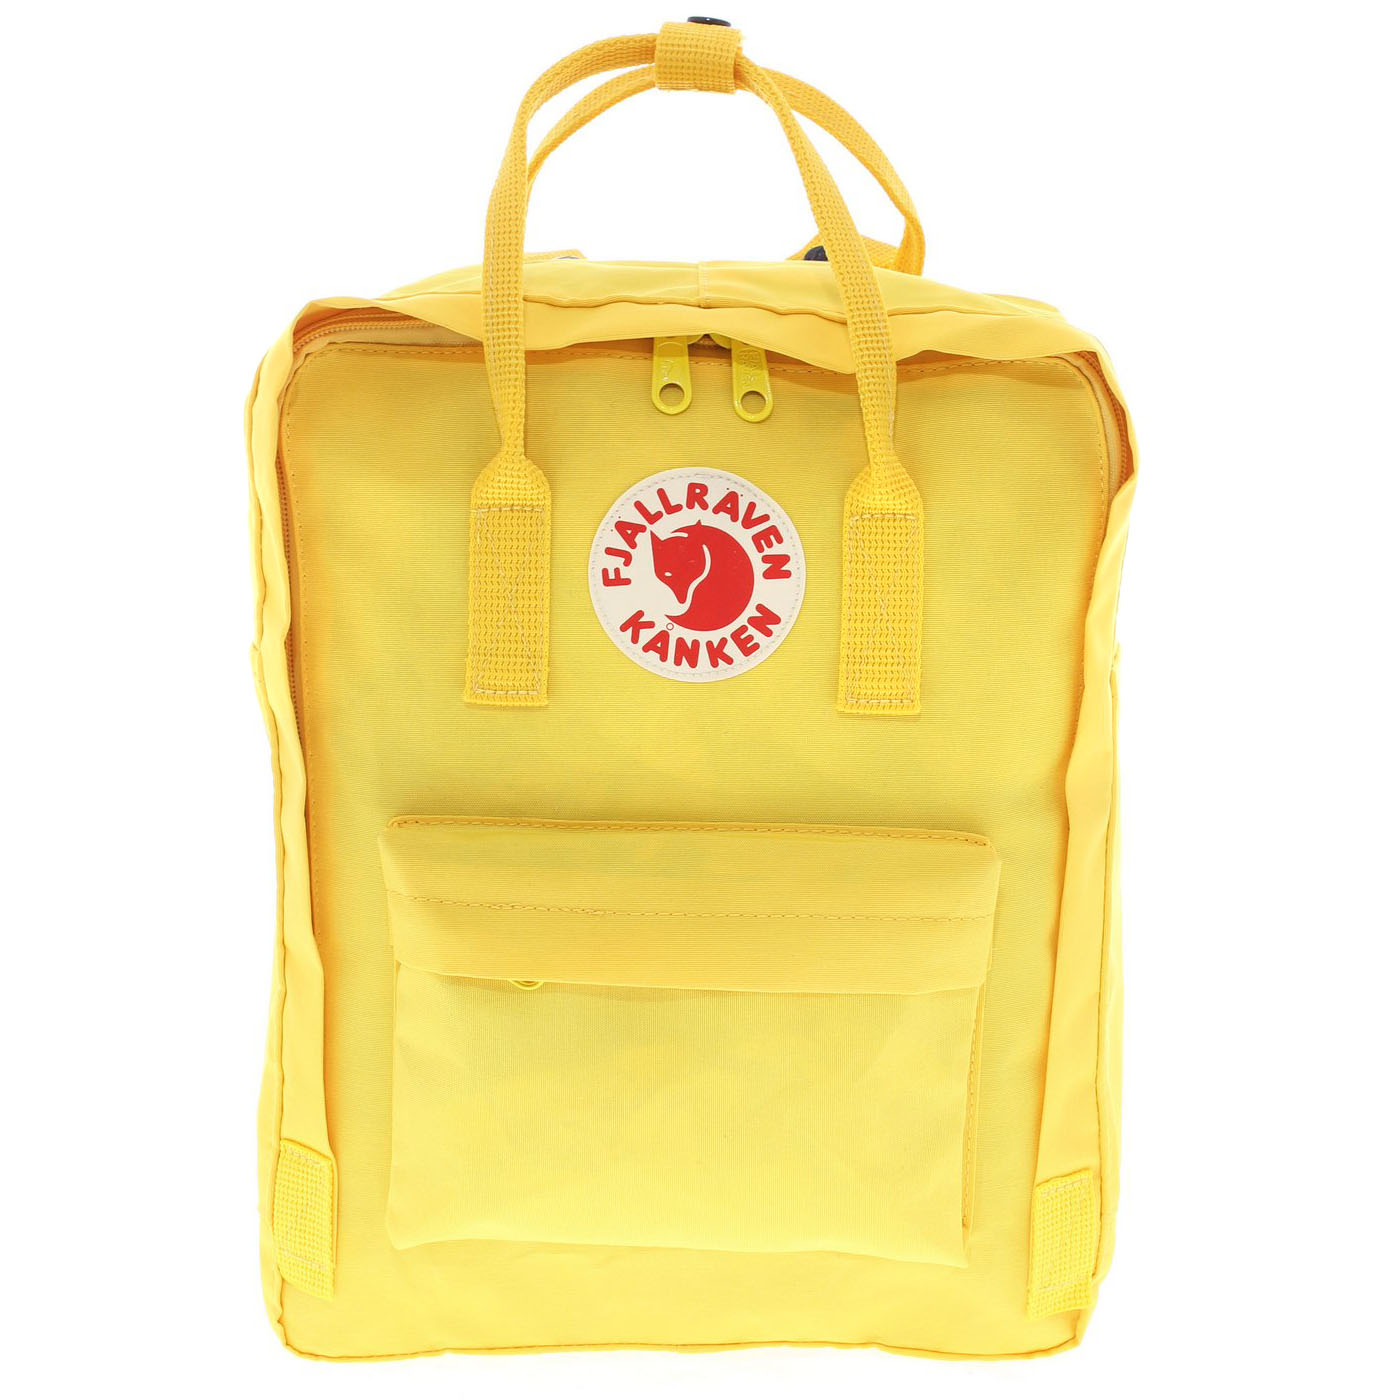 Летний рюкзак Kanken Classic жёлтый 16 литров